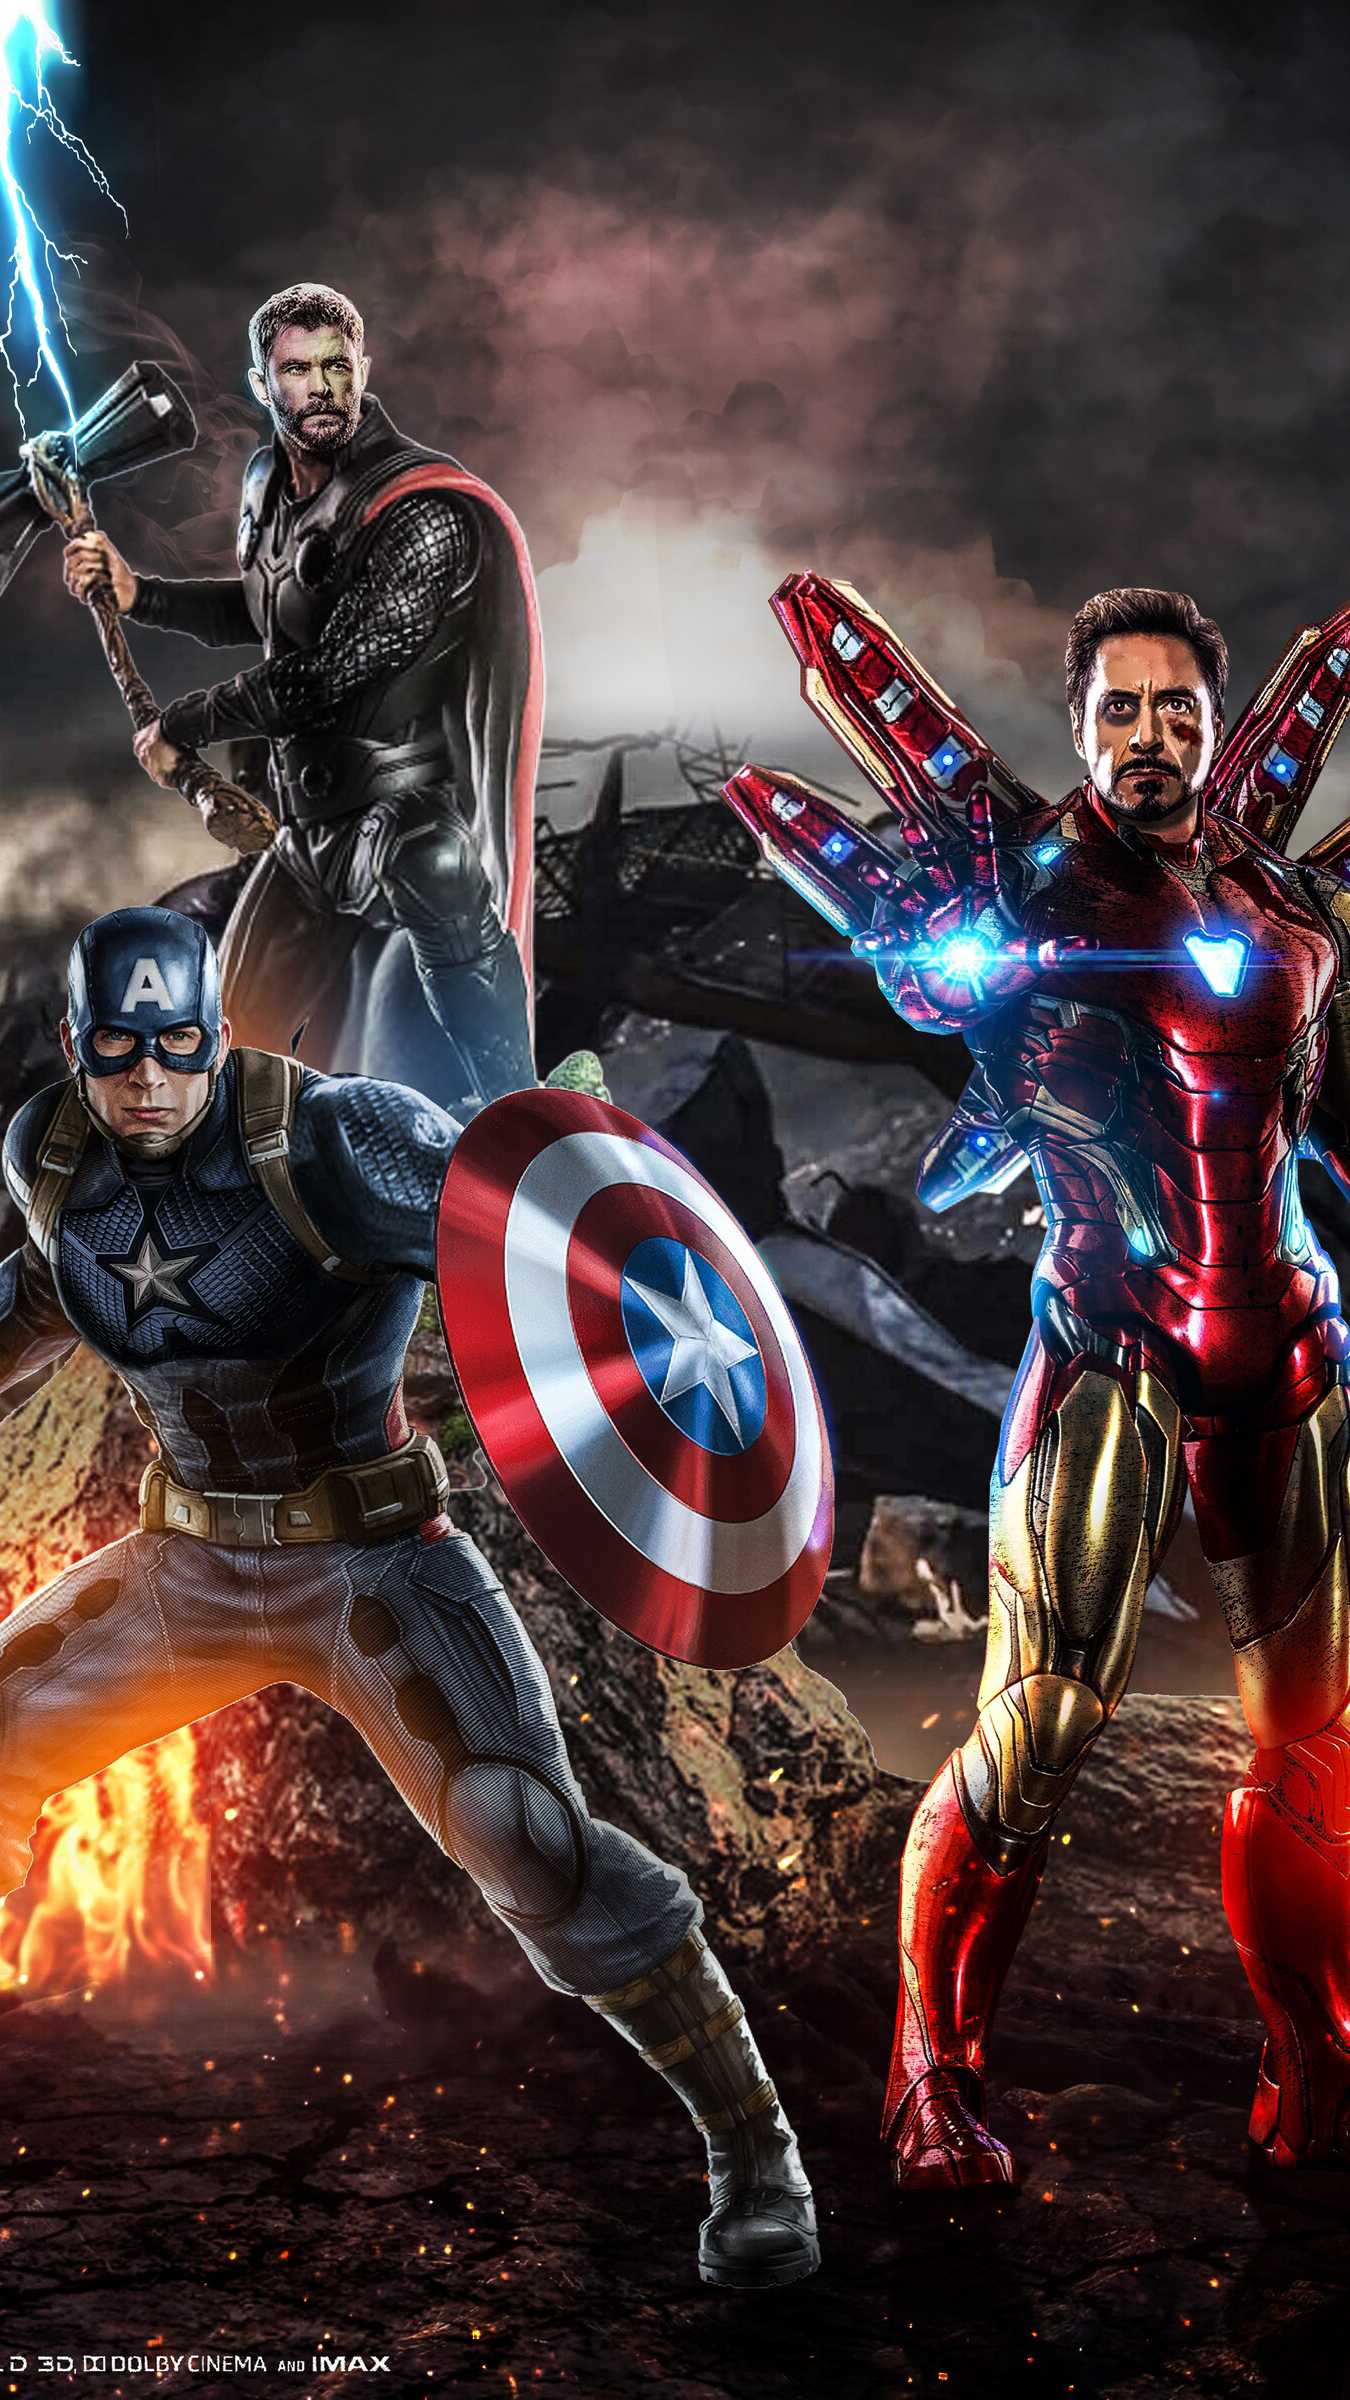 Captain America Avengers Endgame Wallpapers - Wallpaper Cave